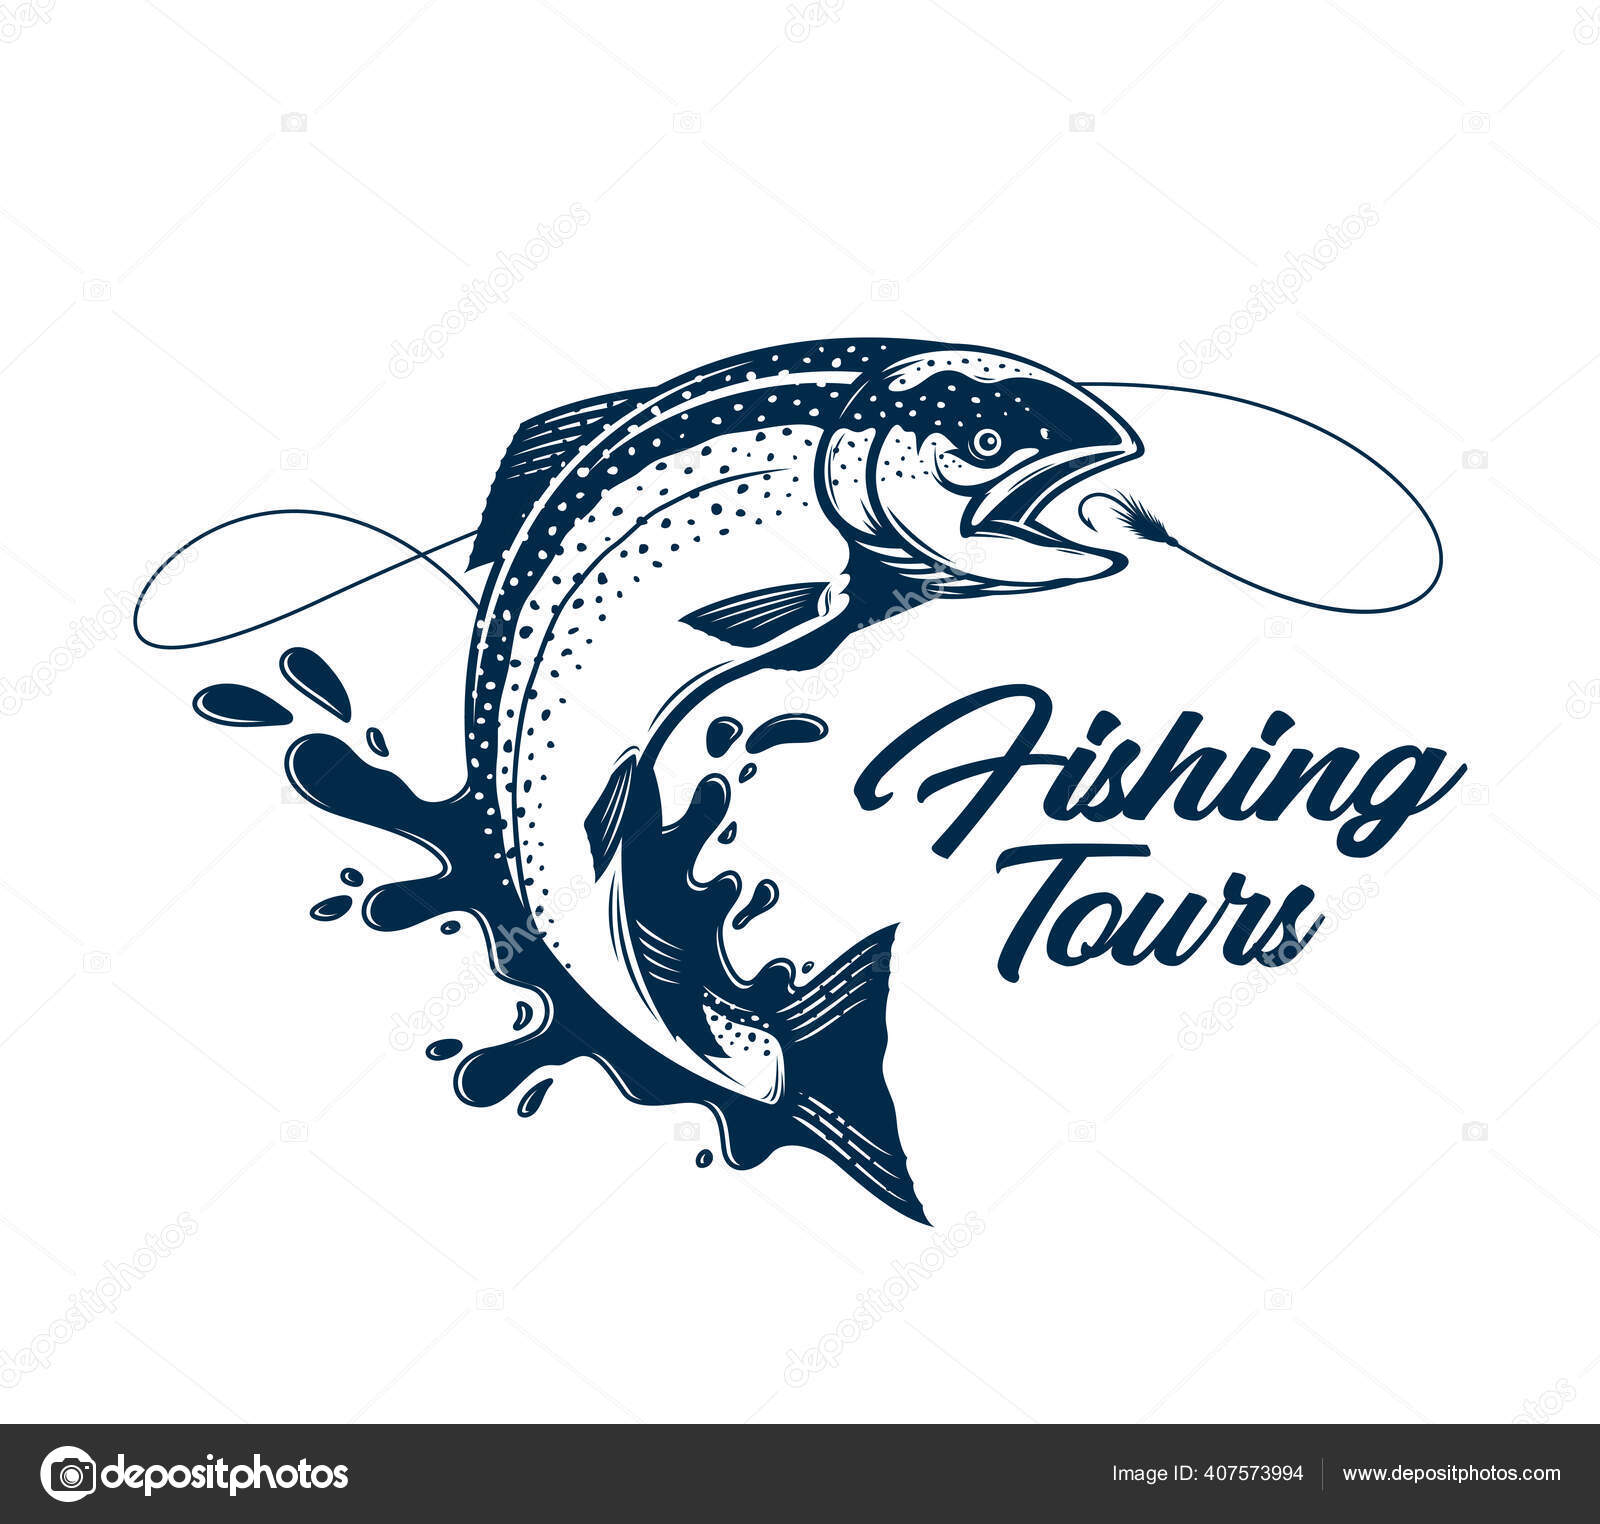 https://st4.depositphotos.com/3885521/40757/v/1600/depositphotos_407573994-stock-illustration-vector-fishing-tours-logo-salmon.jpg